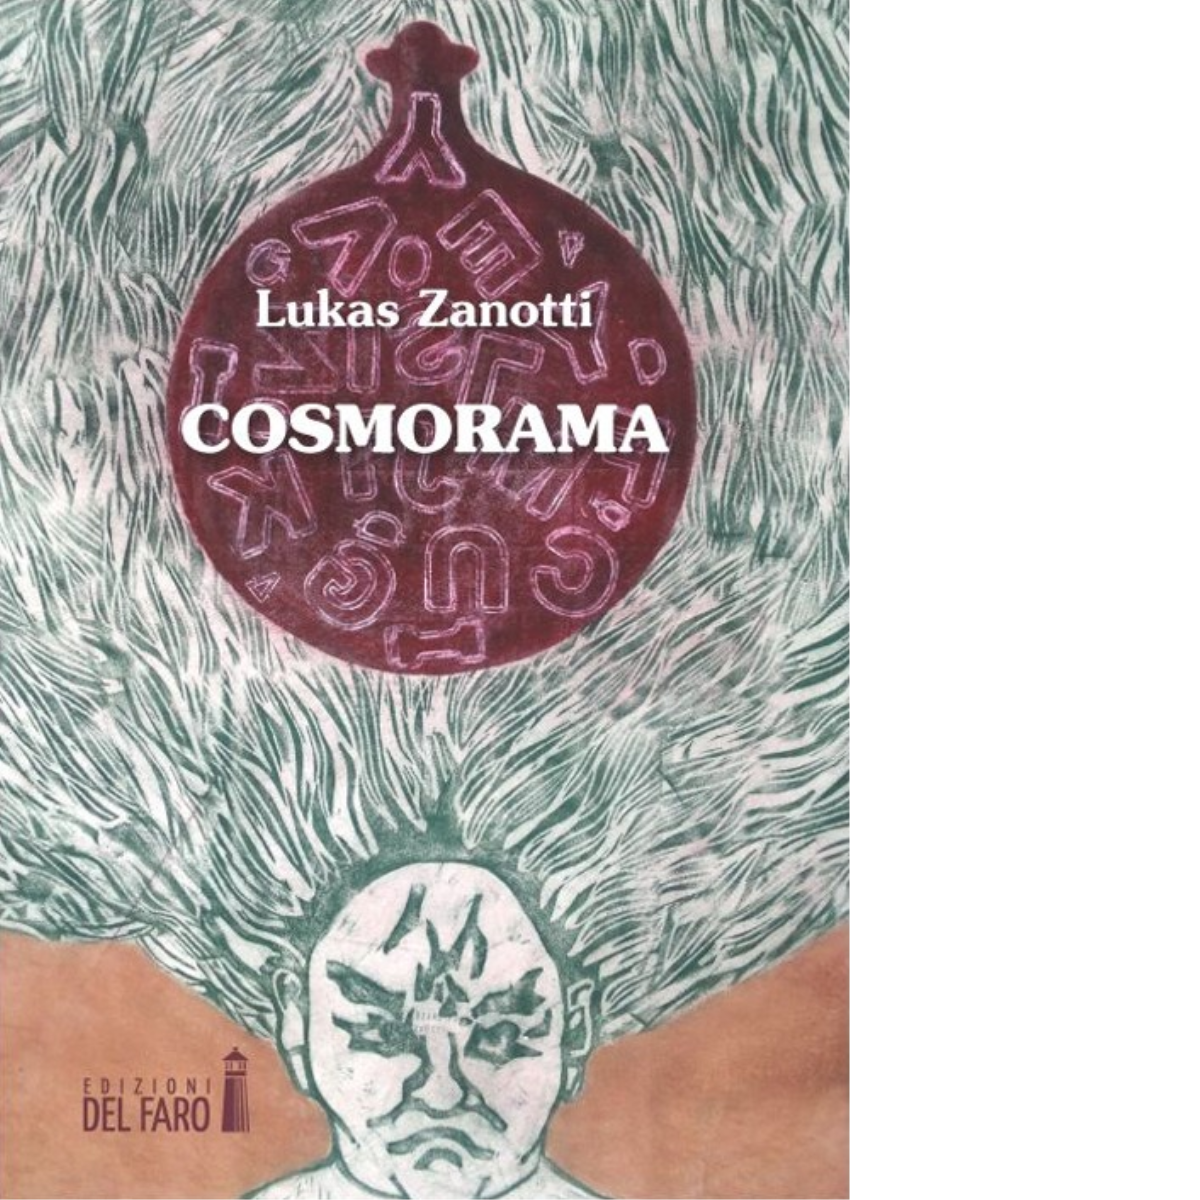 Cosmorama di Lukas Zanotti - Edizioni Del faro, 2013